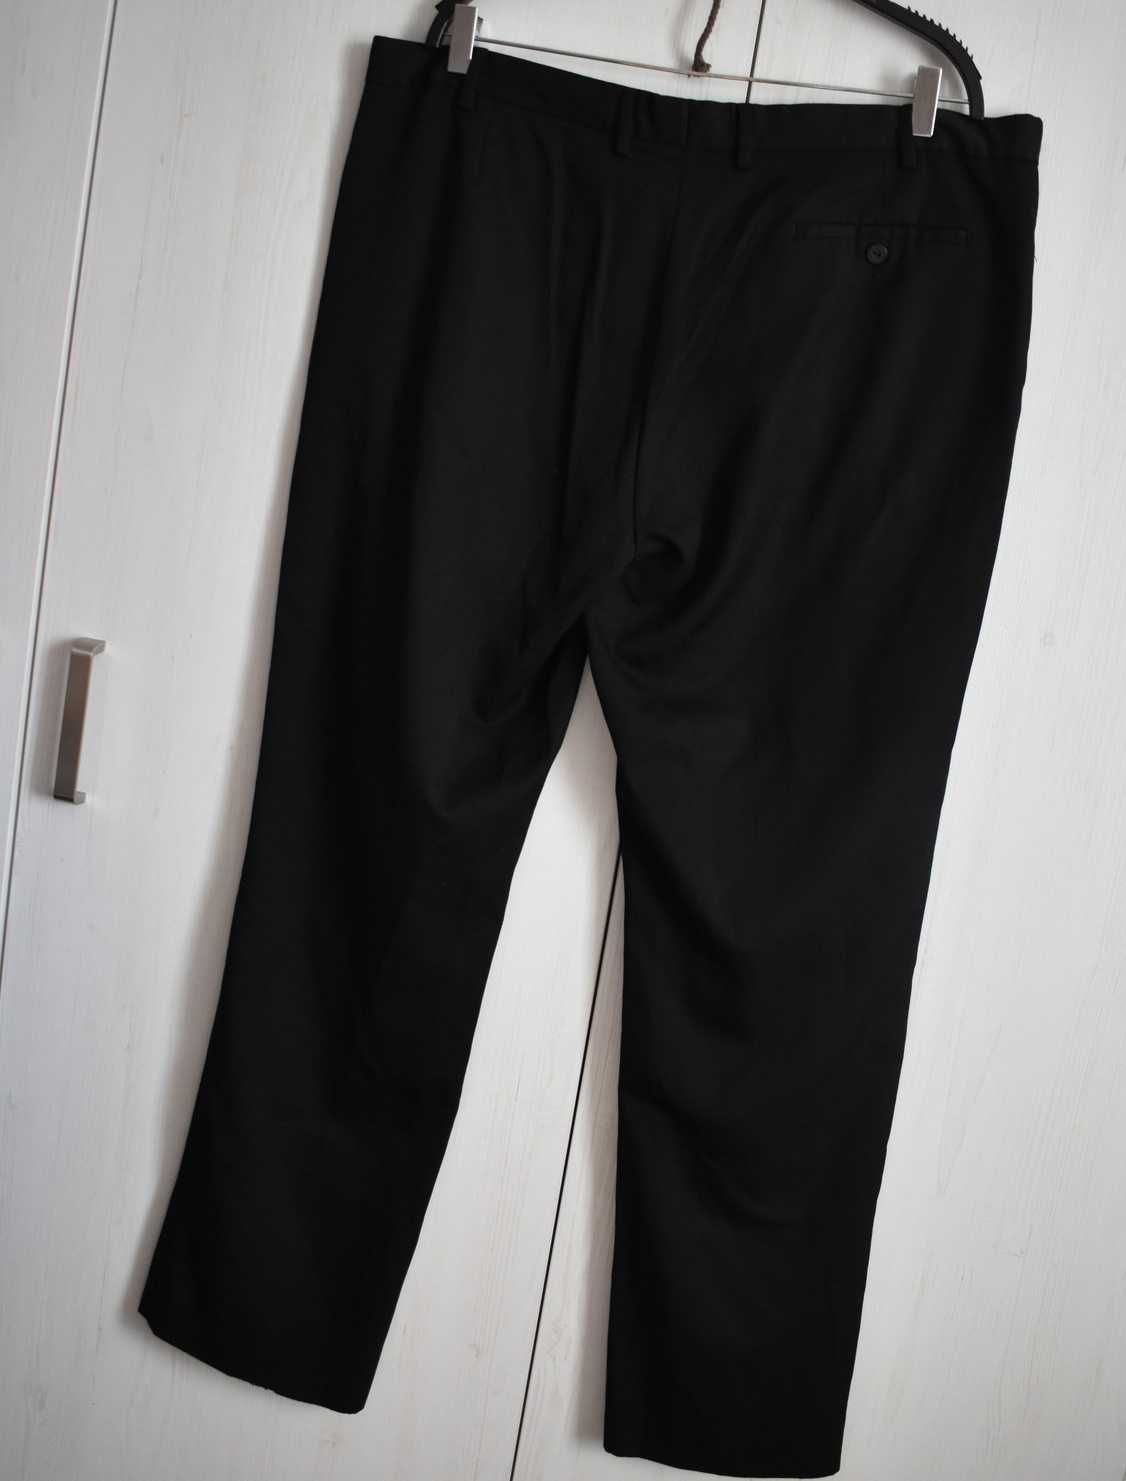 Spodnie materiałowe eleganckie 40R XL garniturowe kanty biurowe czarne